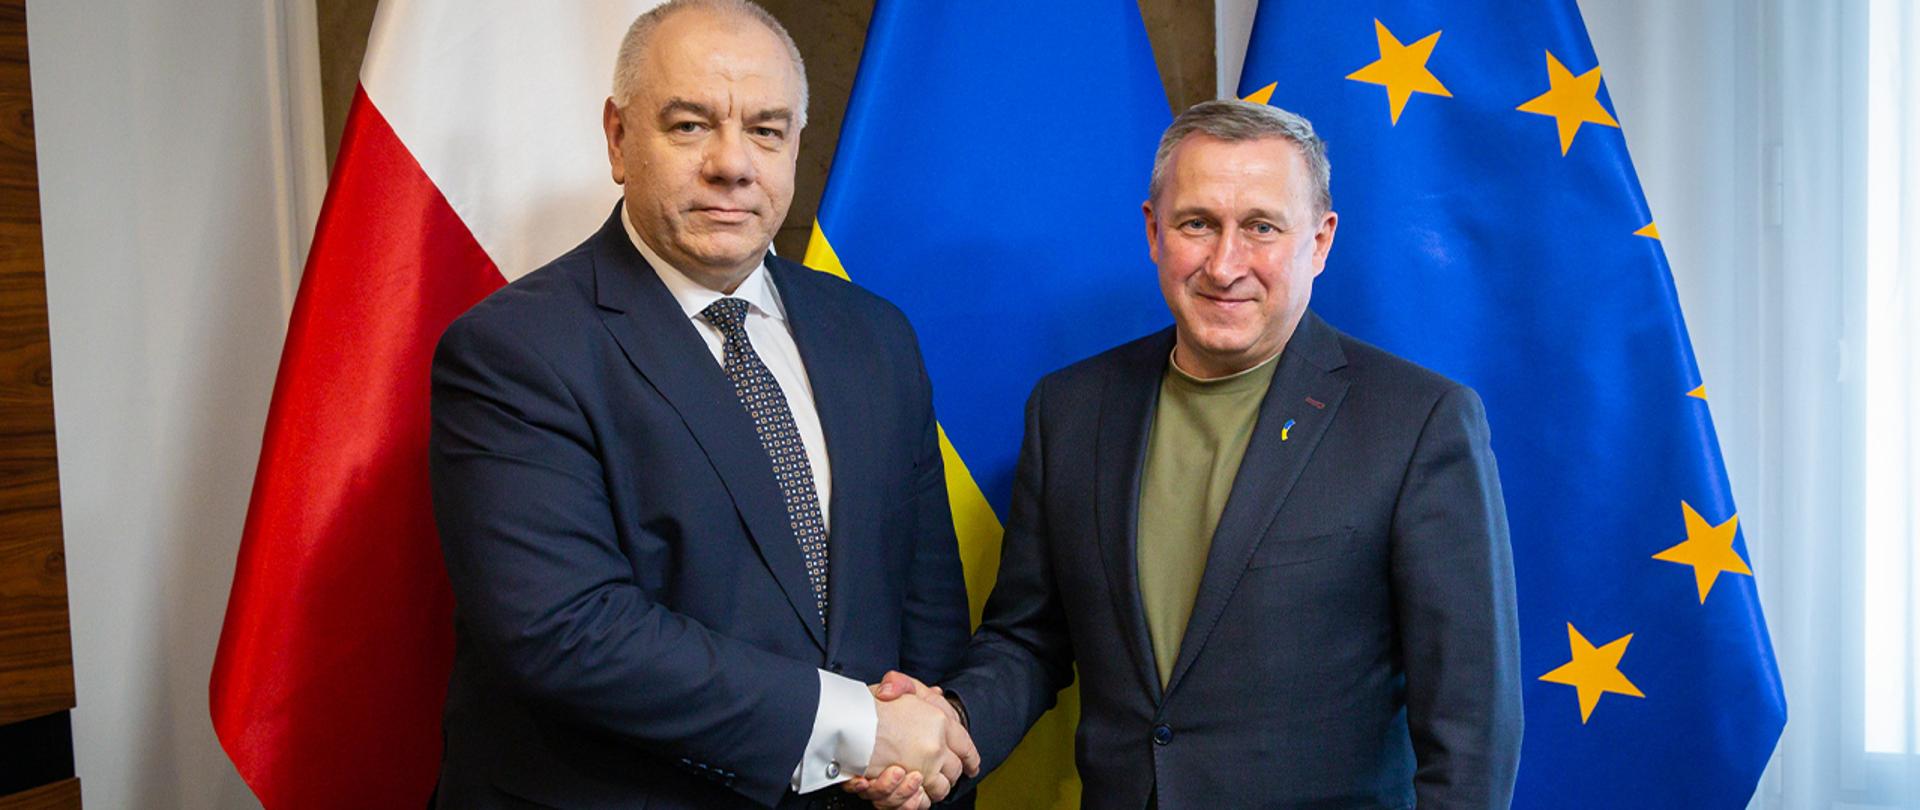 Wicepremier Jacek Sasin i Ambasador Ukrainy podczas spotkania. W tle flagi RP i Ukrainy.